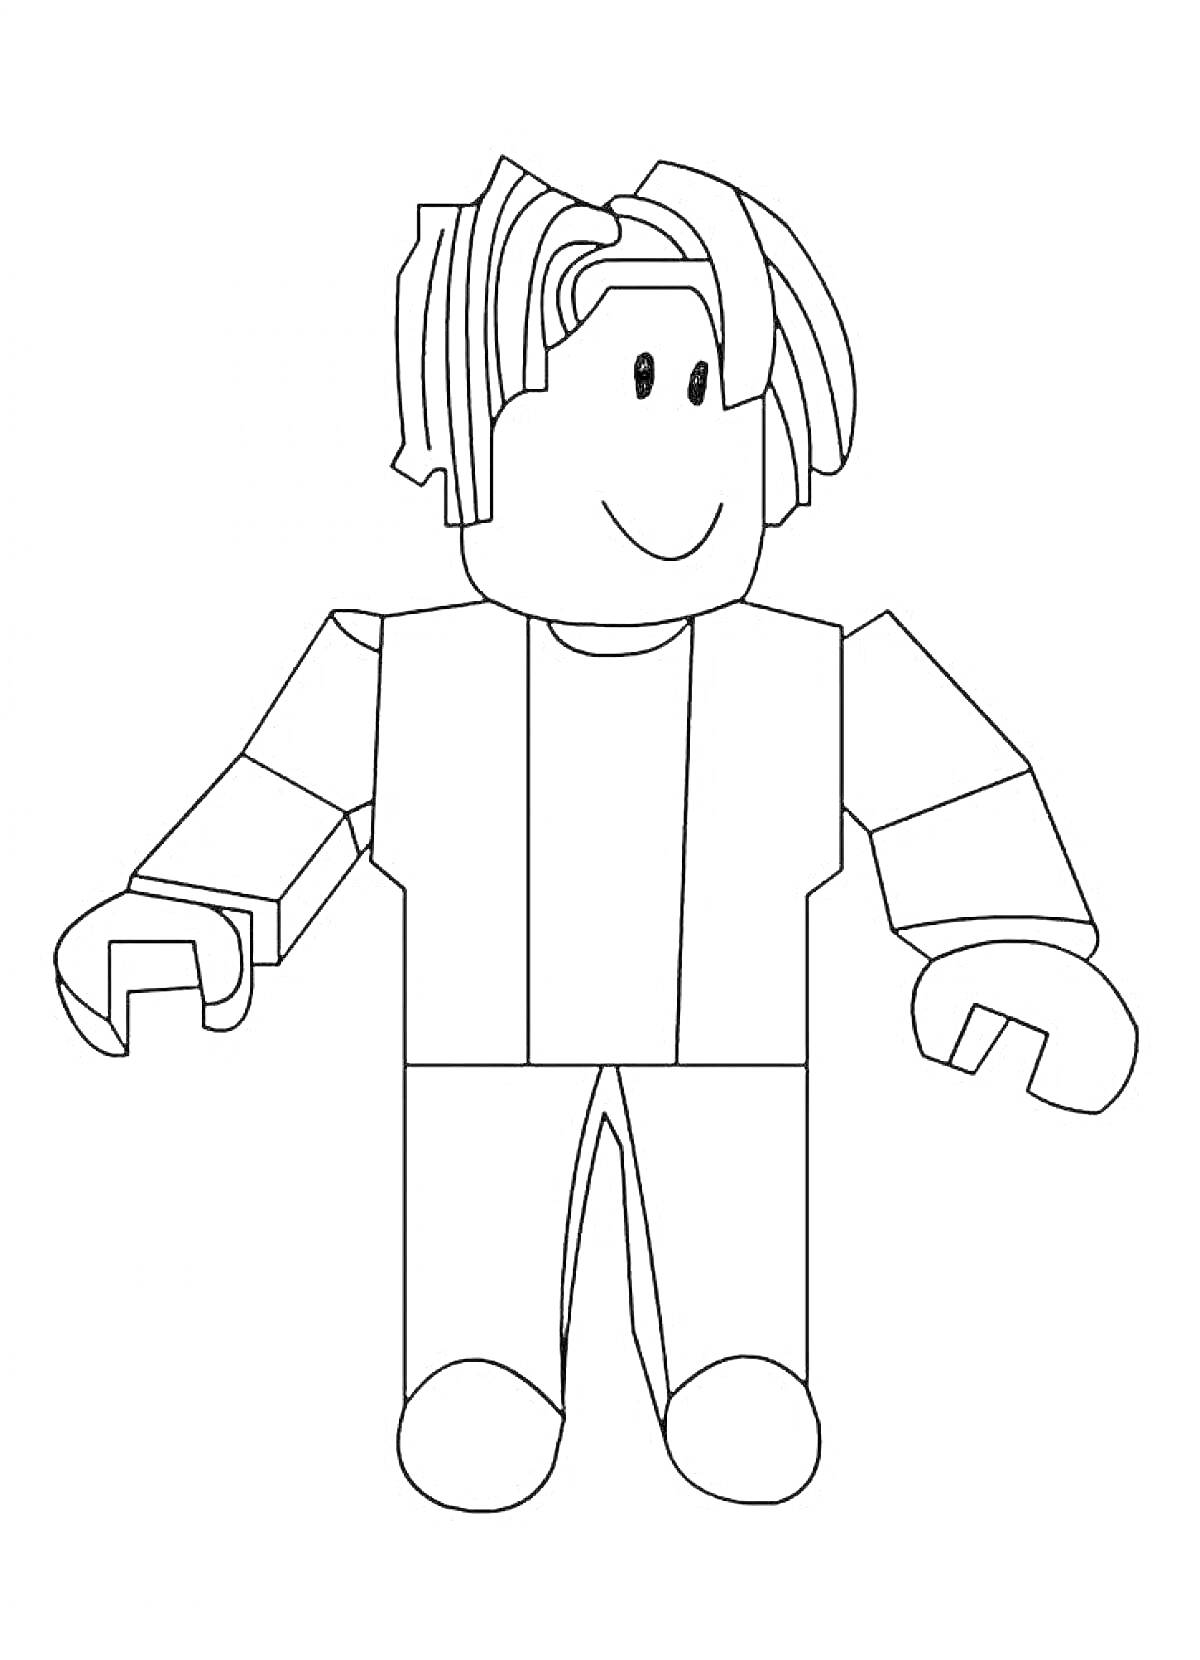 Раскраска Раскраска персонажа из Roblox с короткими волосами и улыбкой